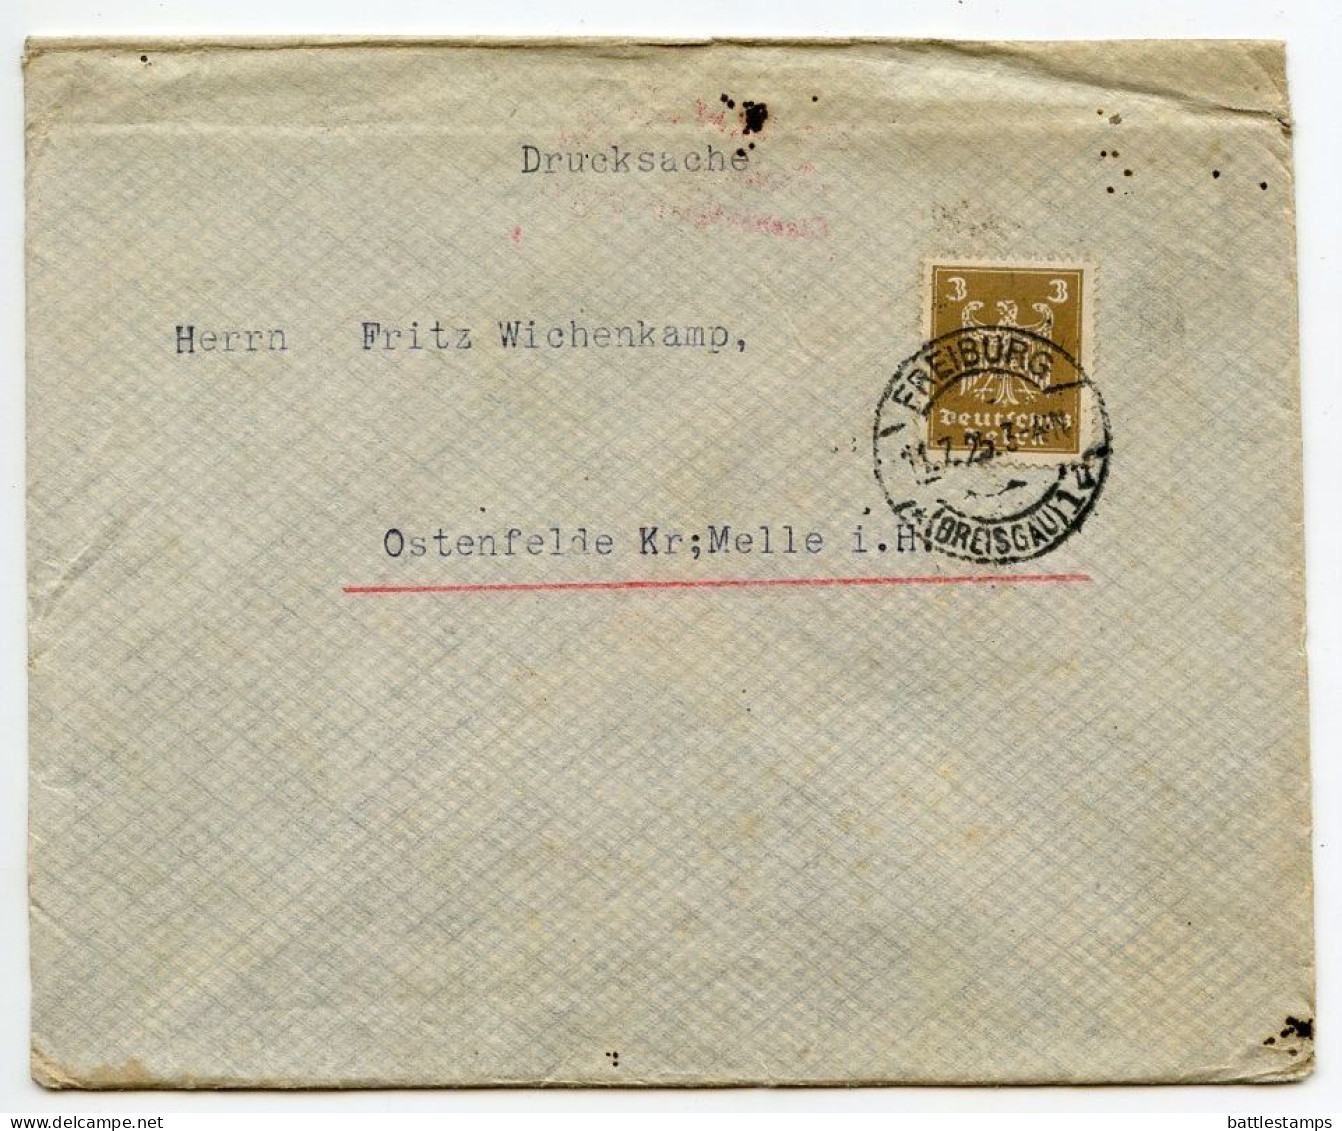 Germany 1925 Cover W/ Document; Freiburg (Breuisgau) - Badischer Verein Für Silberfuchszucht; 3pf. German Eagle - Briefe U. Dokumente